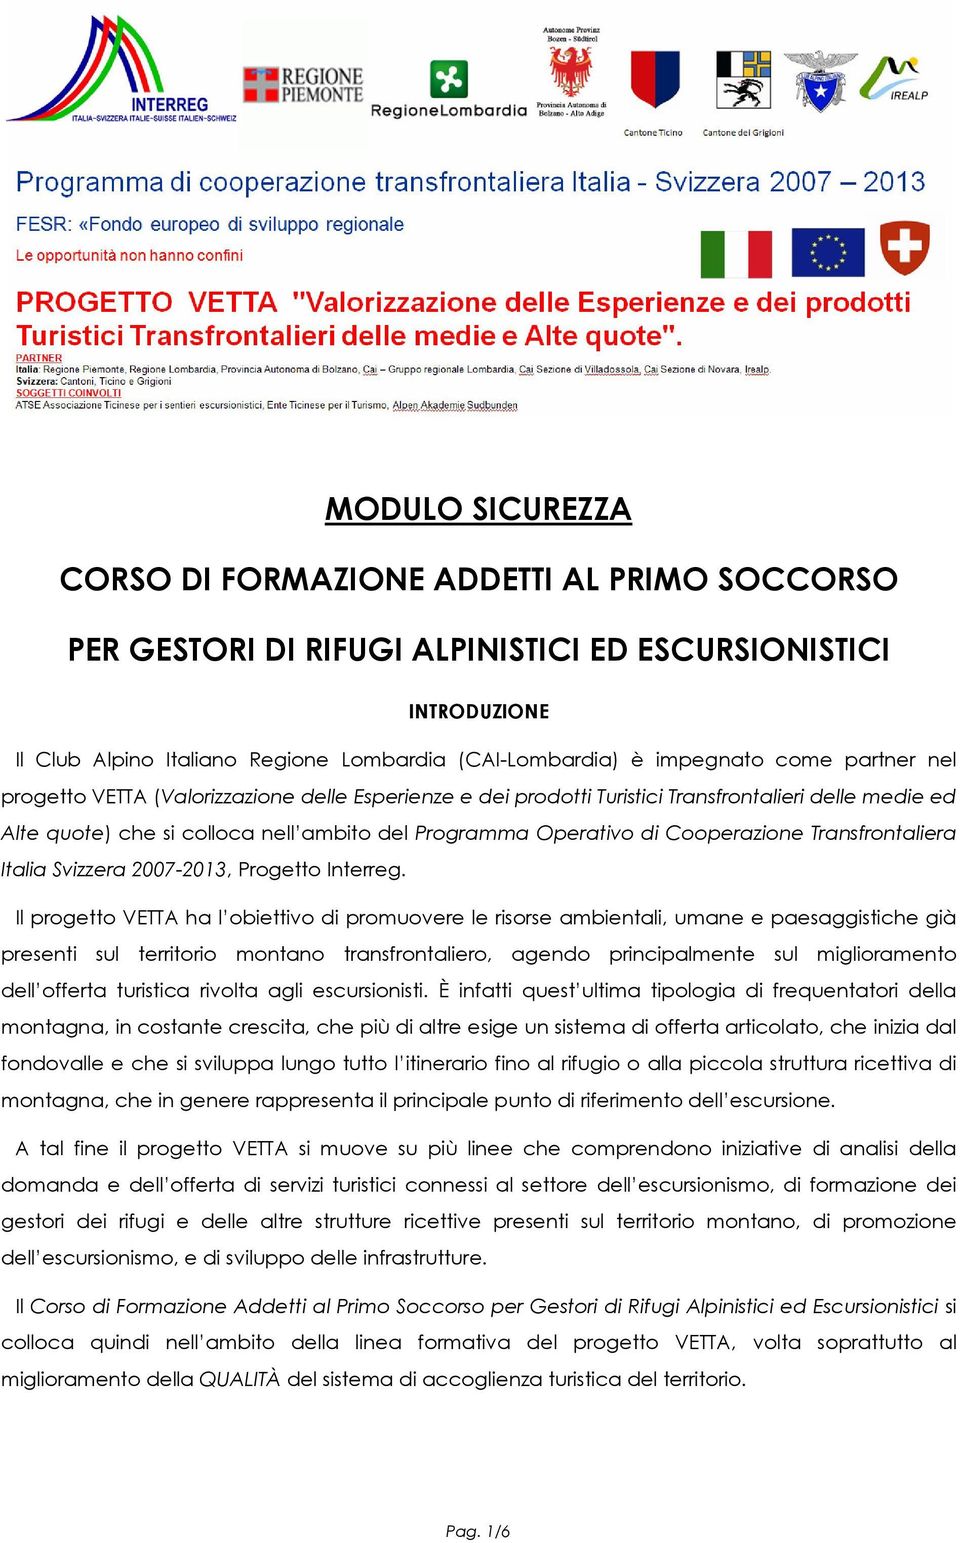 Cooperazione Transfrontaliera Italia Svizzera 2007-2013, Progetto Interreg.